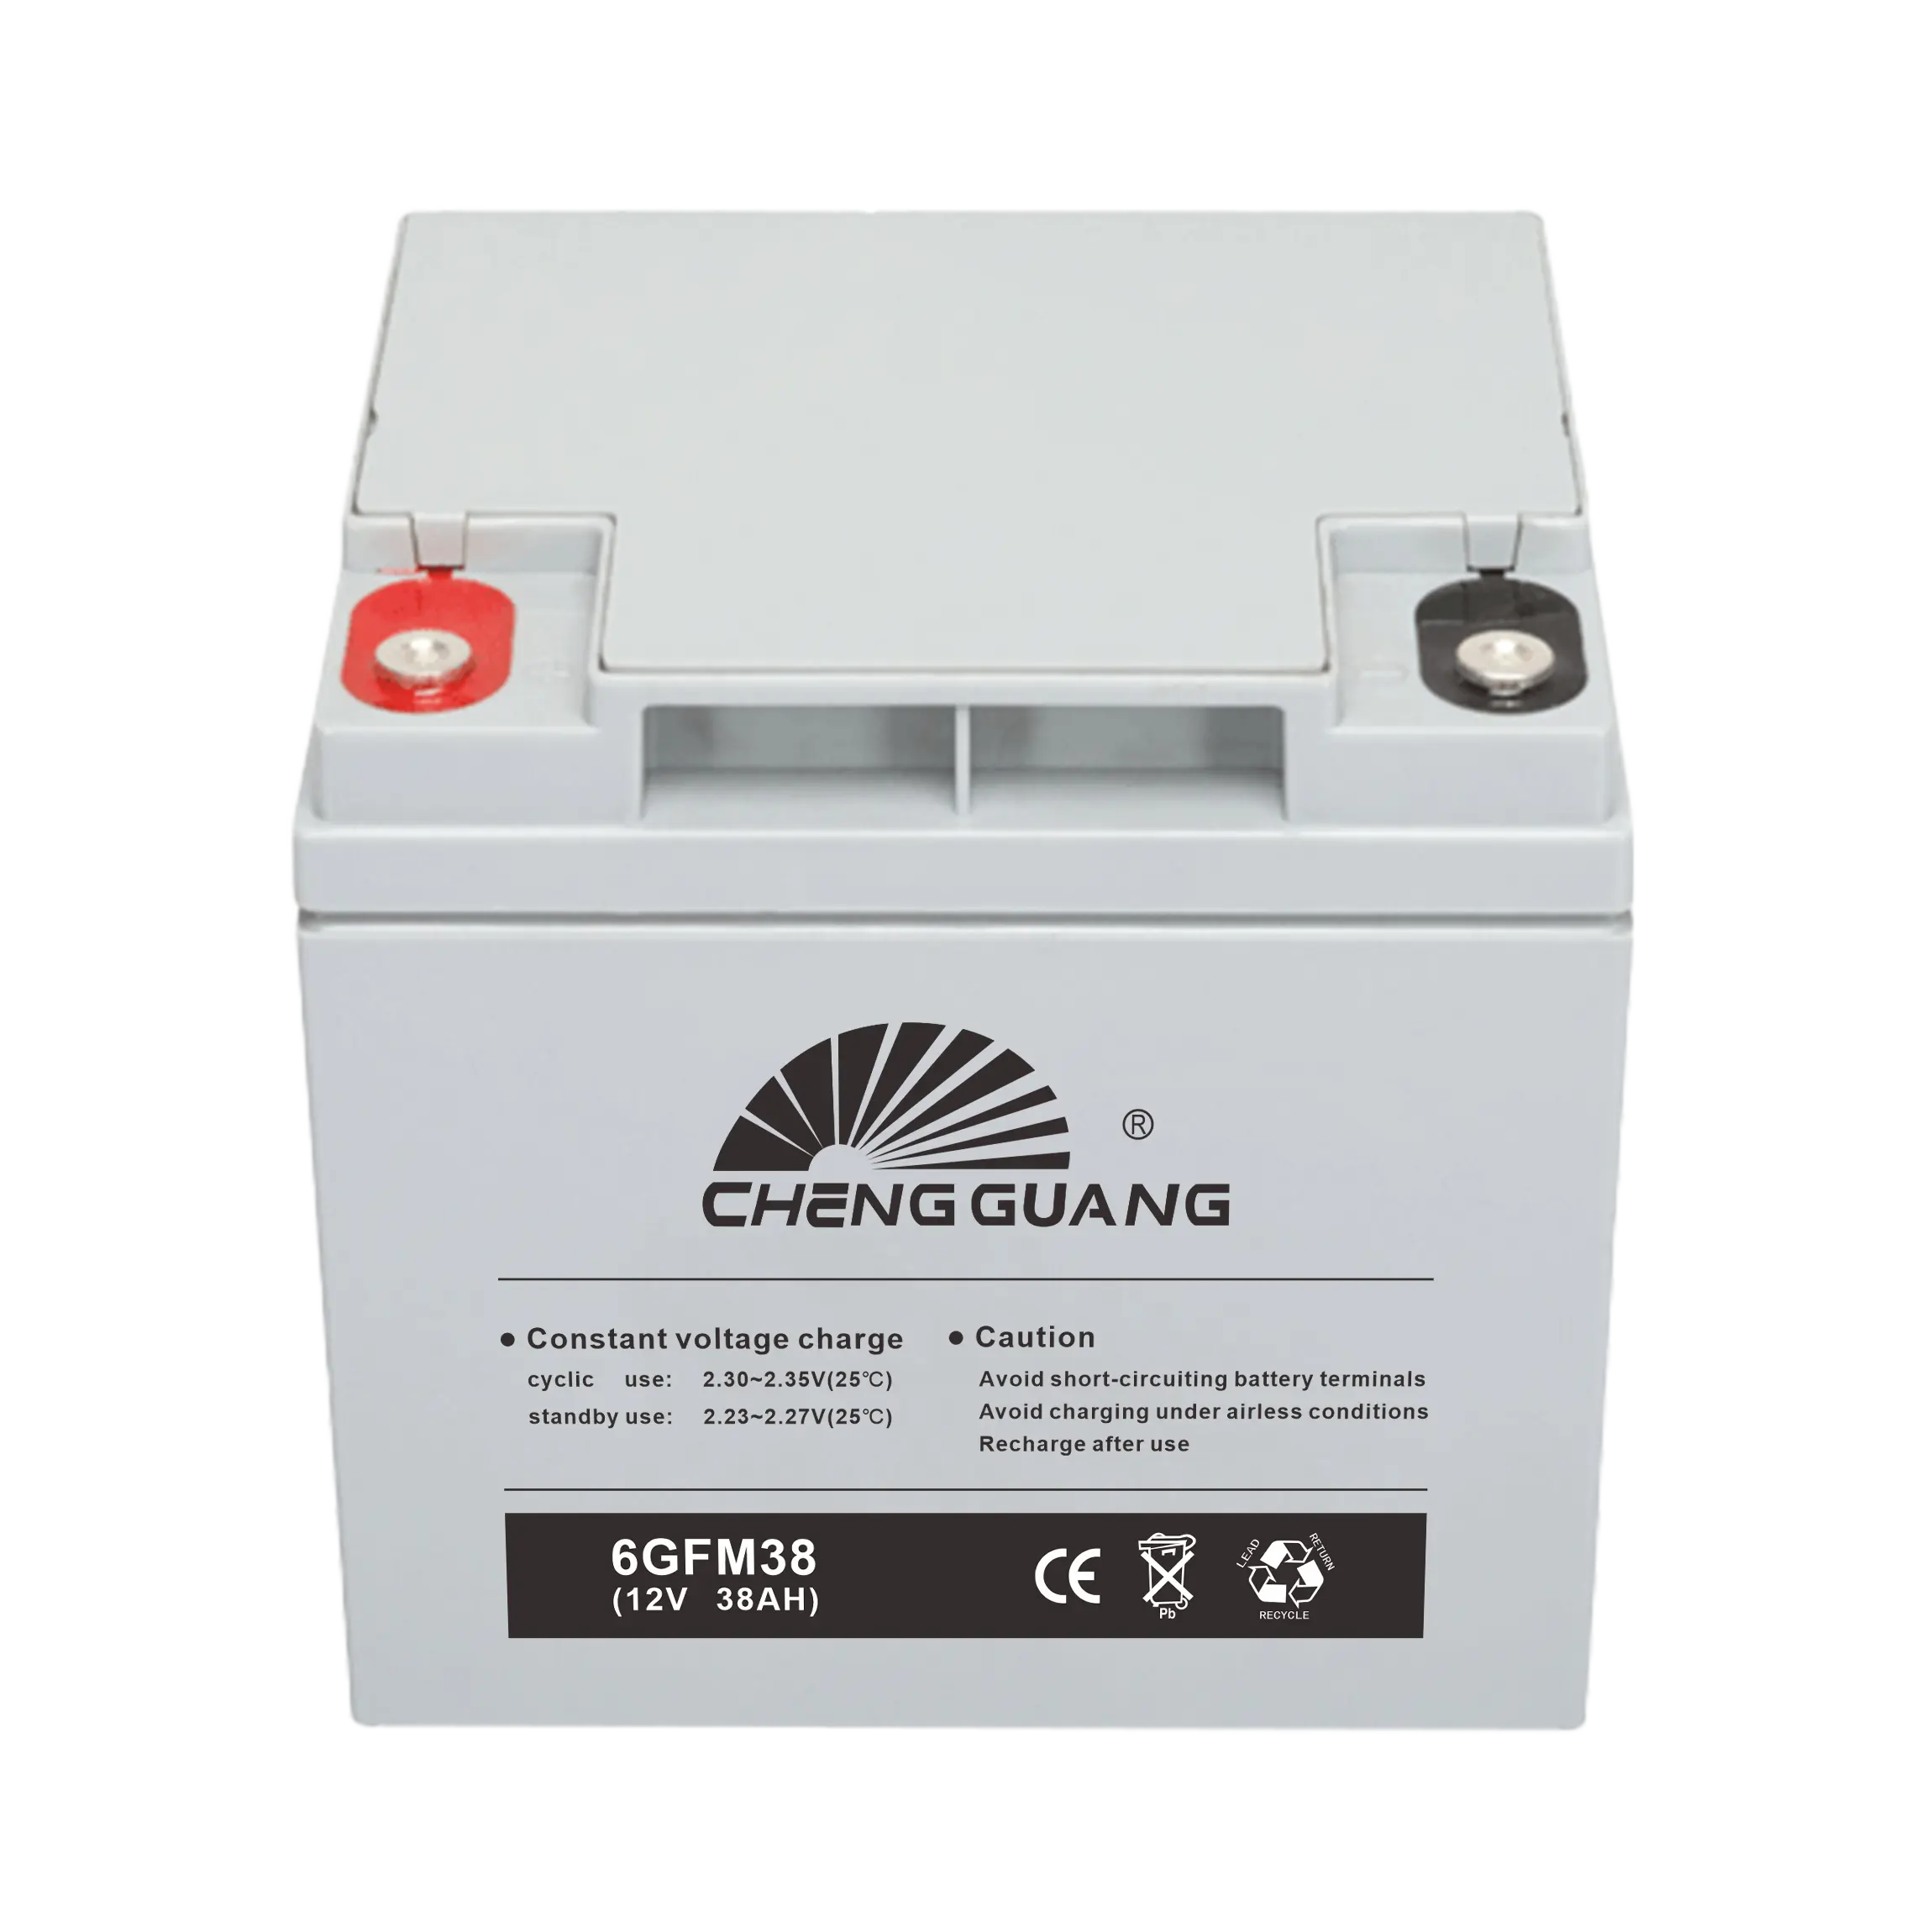 Cheng Guang Marke 12 V Auto-Autobatterie Lkw Schnellstart-Fahrzeugbatterie mit guter Qualität und Preis Automotive-Batterie